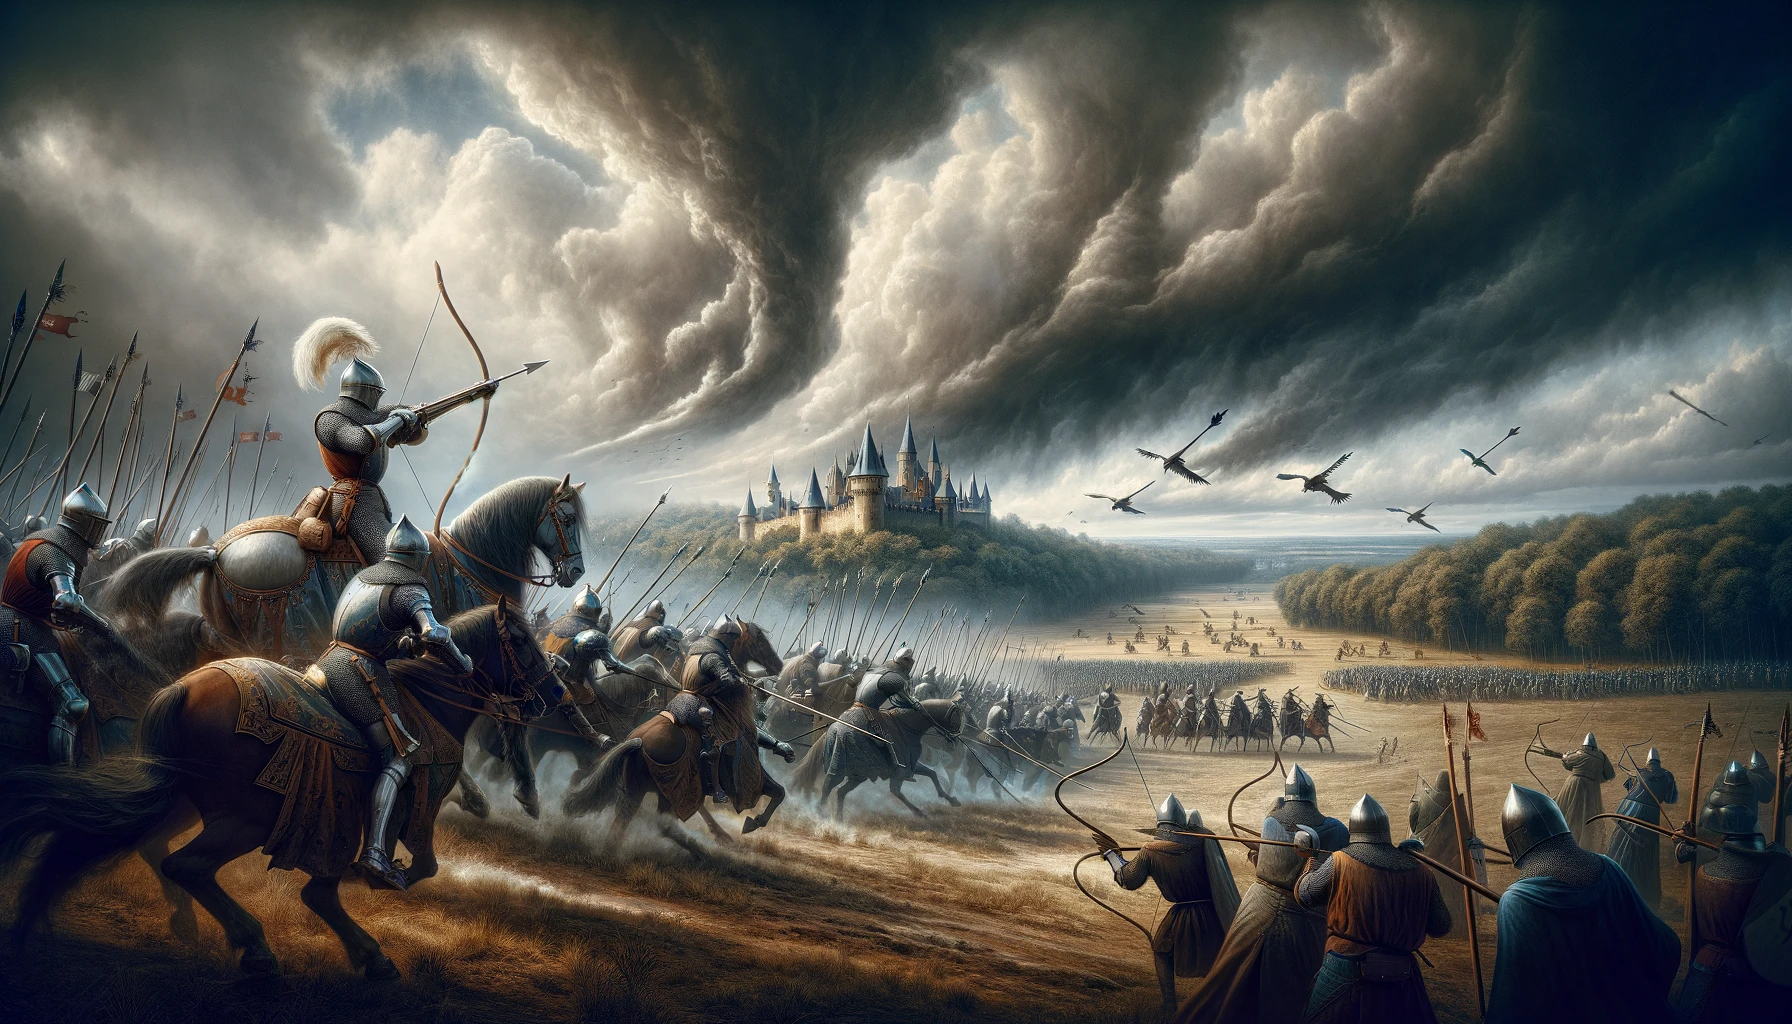 Scène de bataille médiévale intense illustrant la Guerre de Cent Ans, avec chevaliers en armure et archers longbow